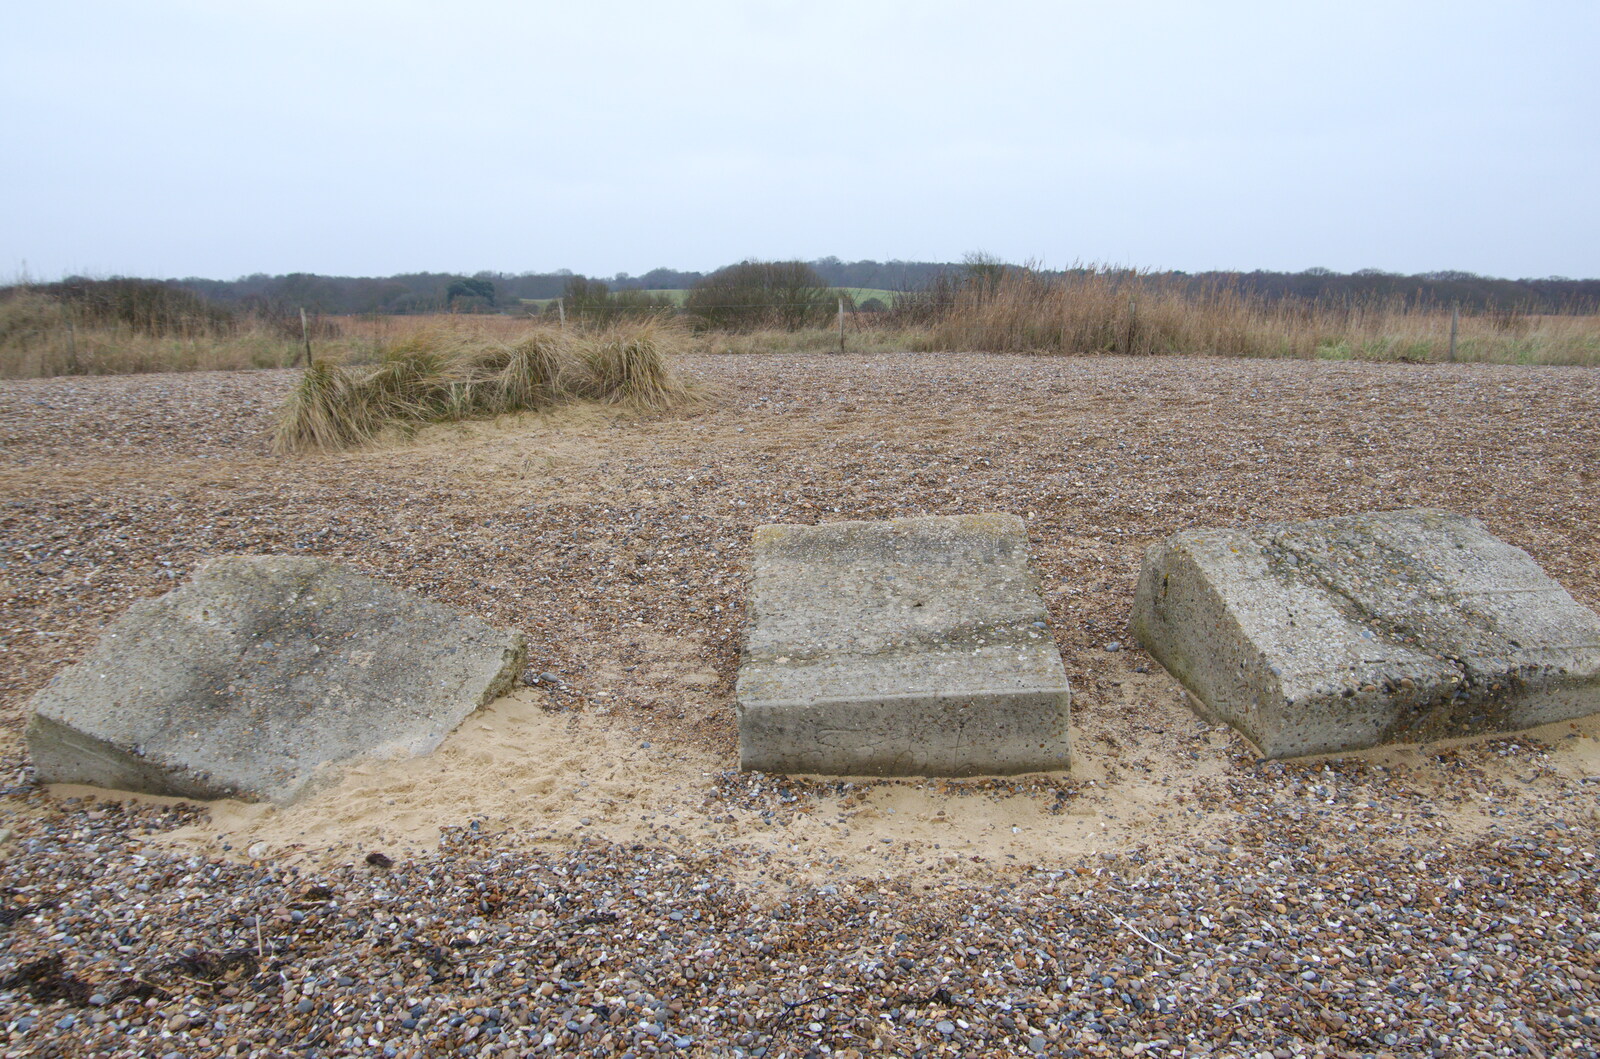 Concrete blocks on the beach from A Trip to the Beach, Dunwich Heath, Suffolk - 27th December 2019